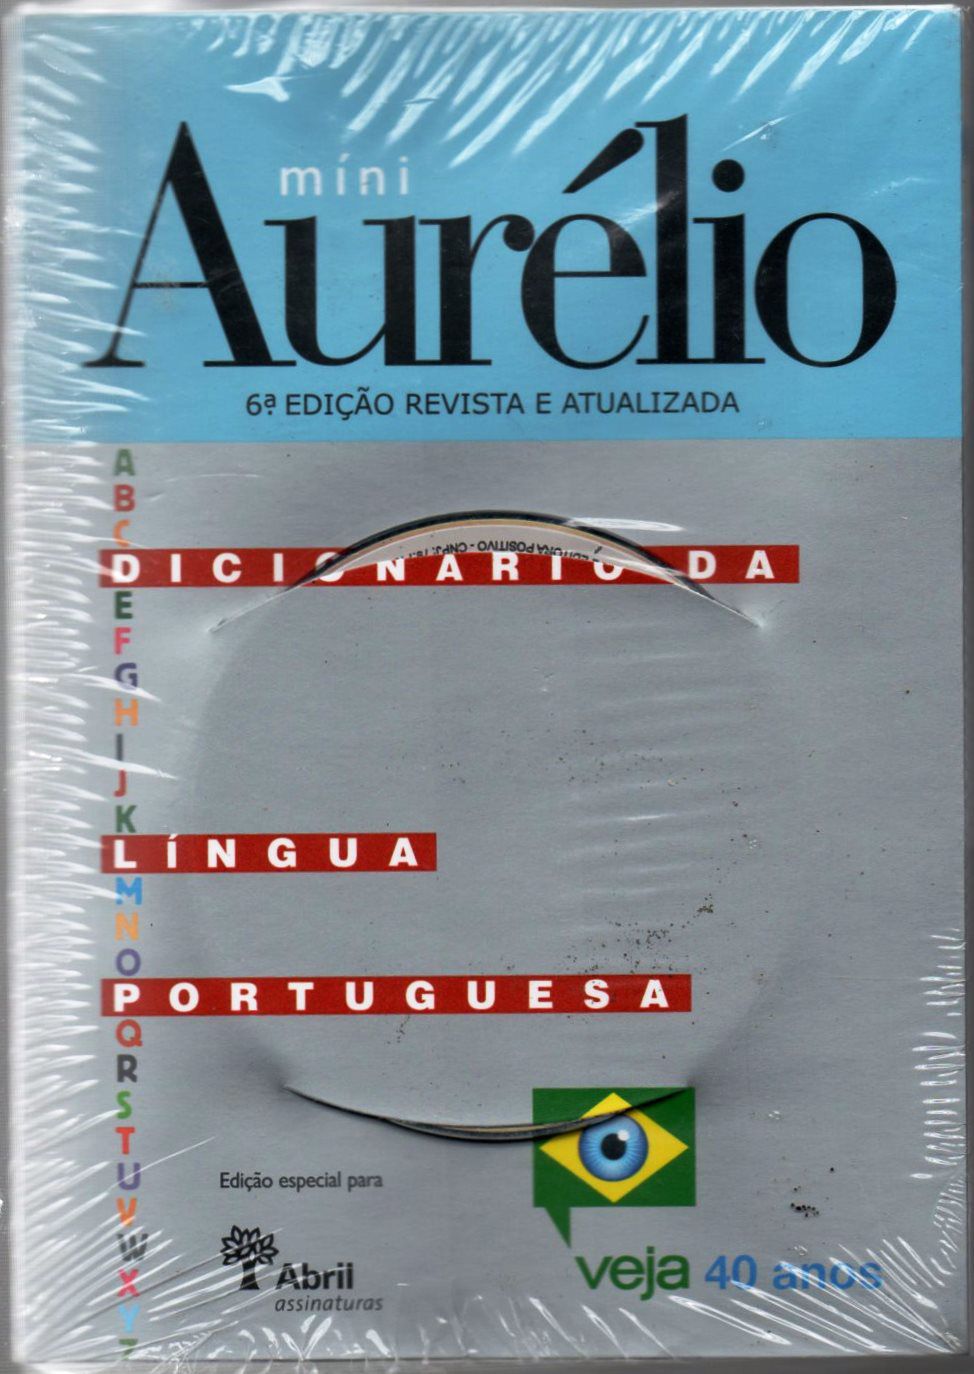 Dicionário Mini Aurélio - News Center Online - newscenter